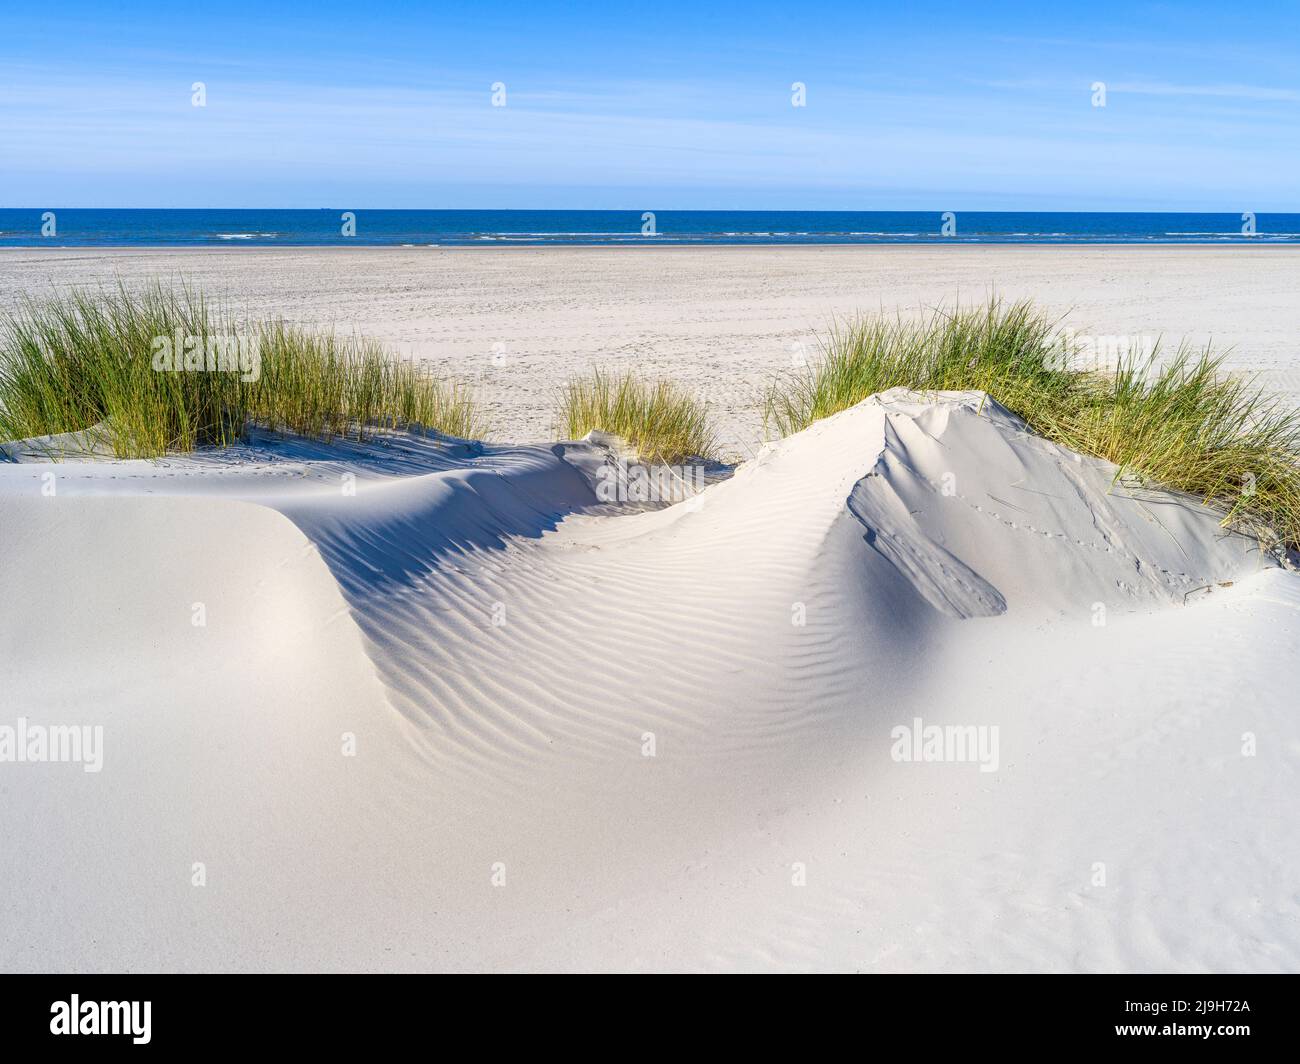 Strand, Dünenlandschaft auf der Insel Juist, Nordsee, Niedersachsen, Deutschland Foto de stock